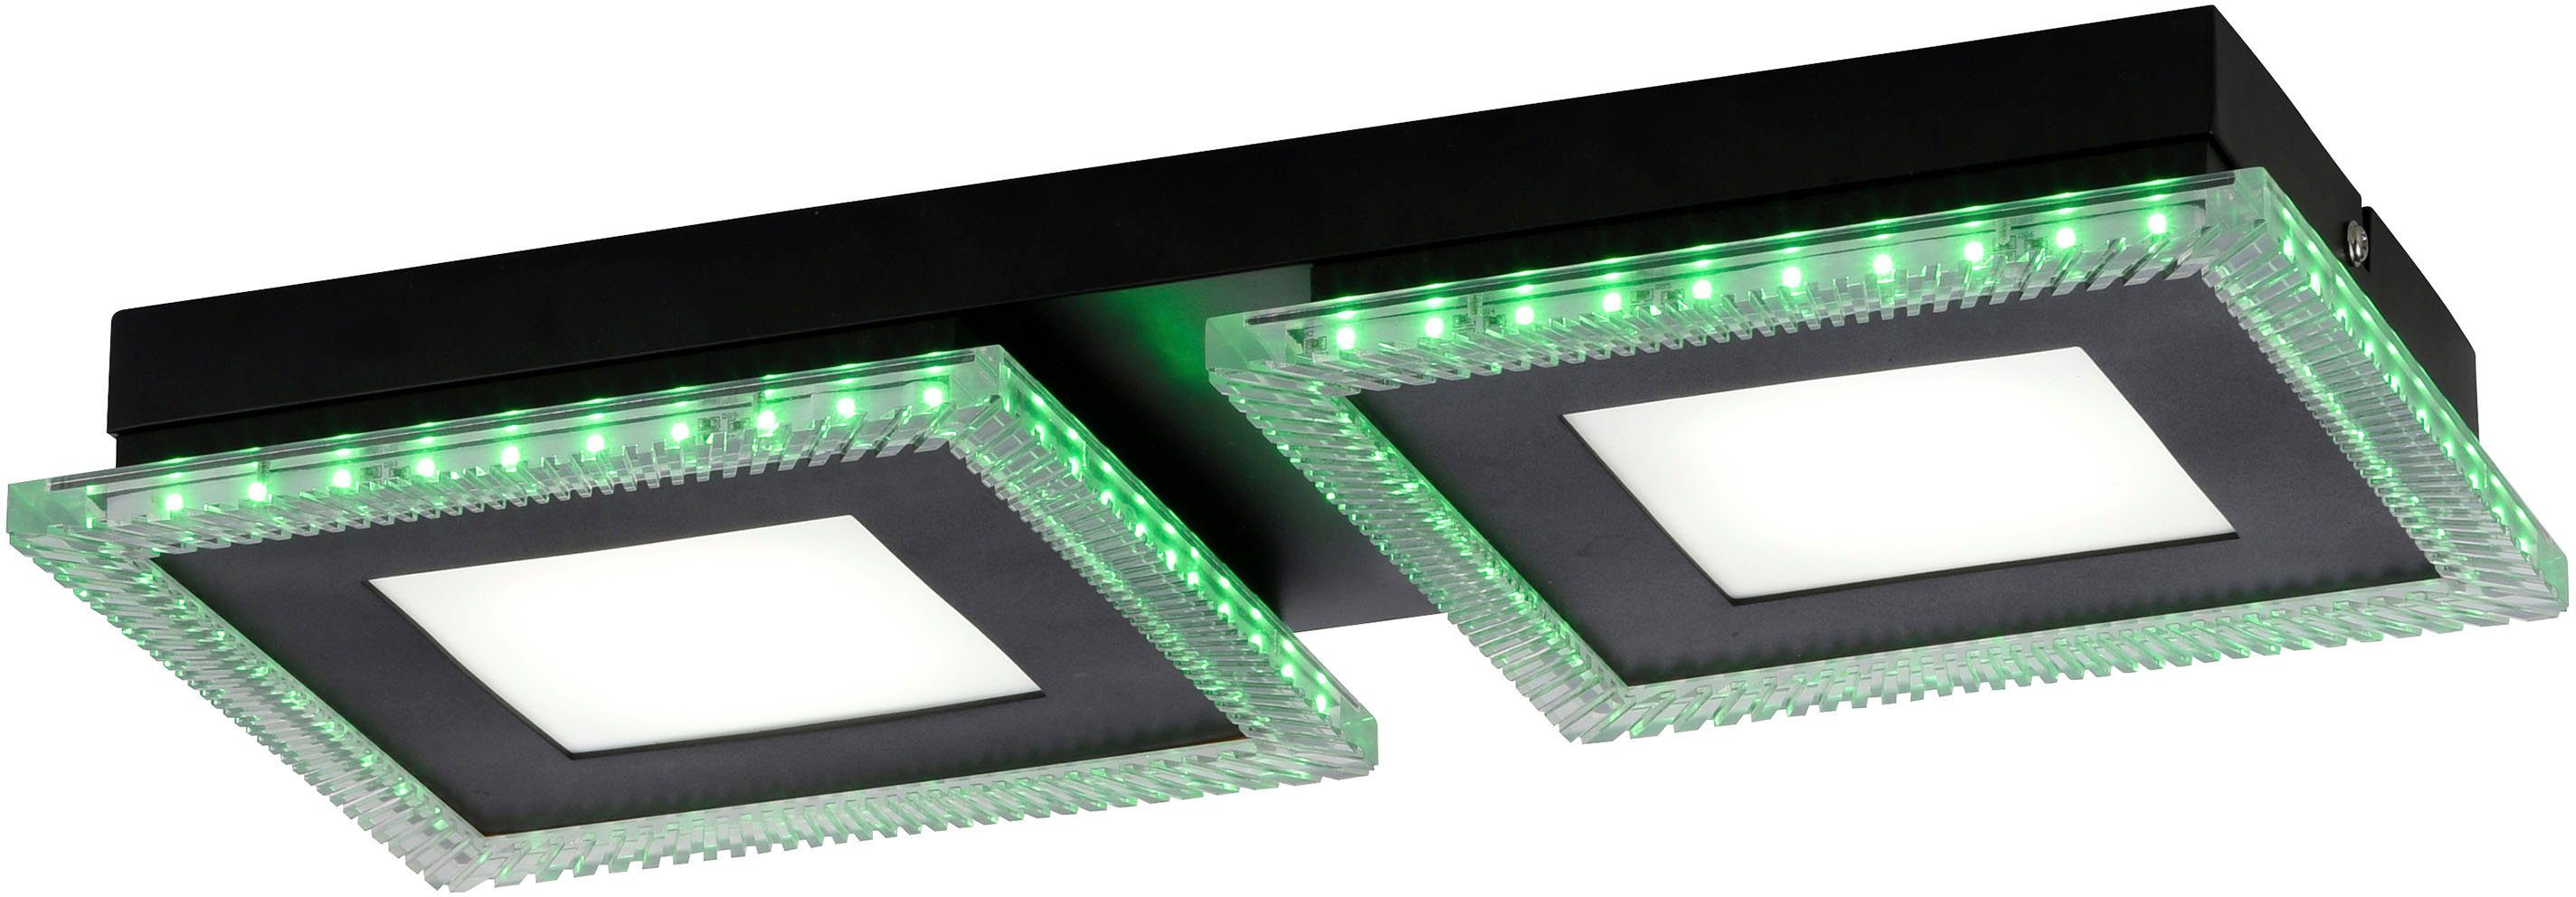 fest separat Direkt FB integriert, über LED LED - ACRI, Deckenleuchte kaltweiß, Leuchten steuerbar warmweiß Lichtquellen